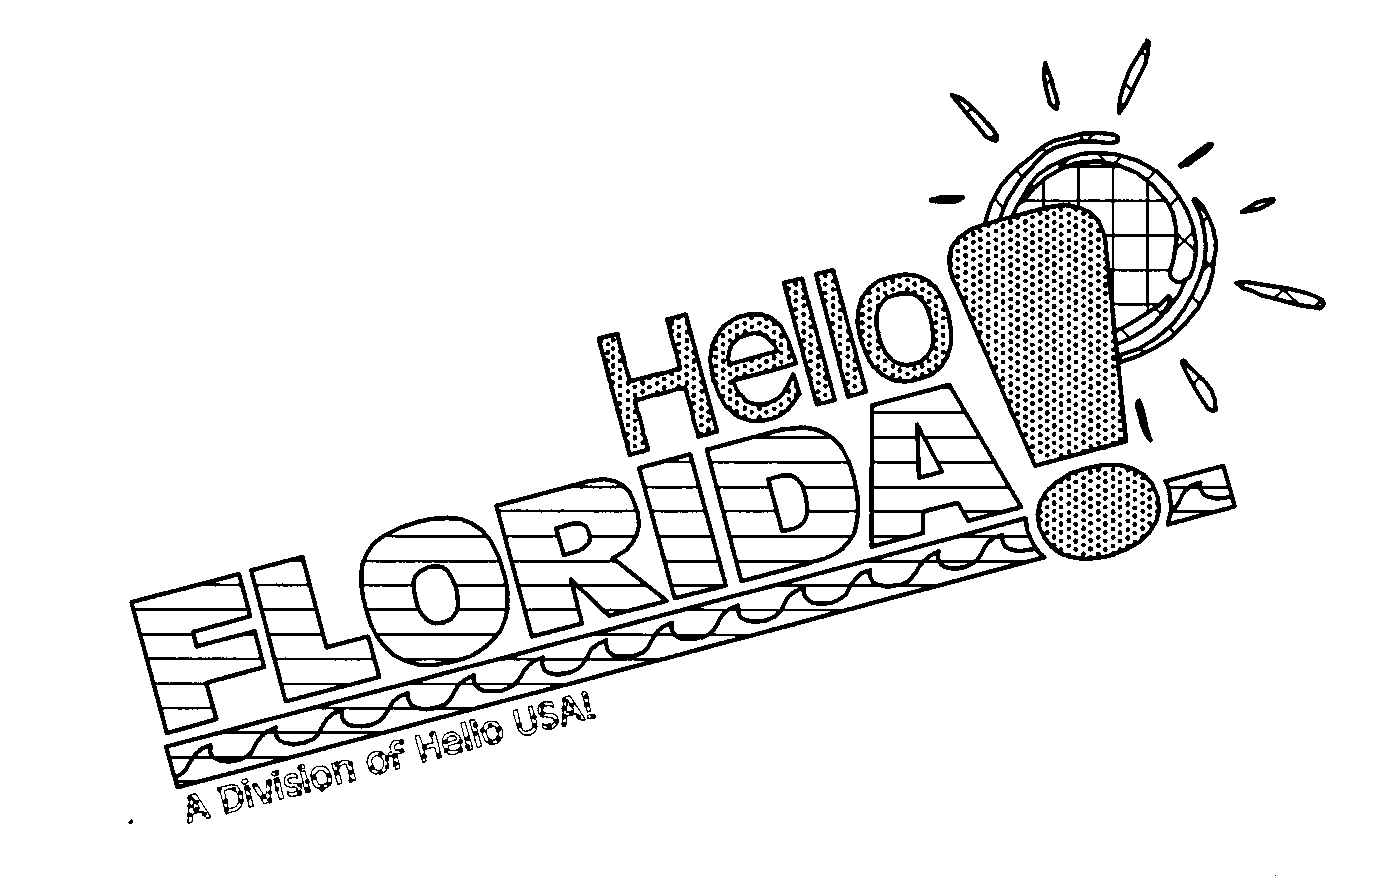  HELLO FLORIDA! A DIVISION OF HELLO USA!